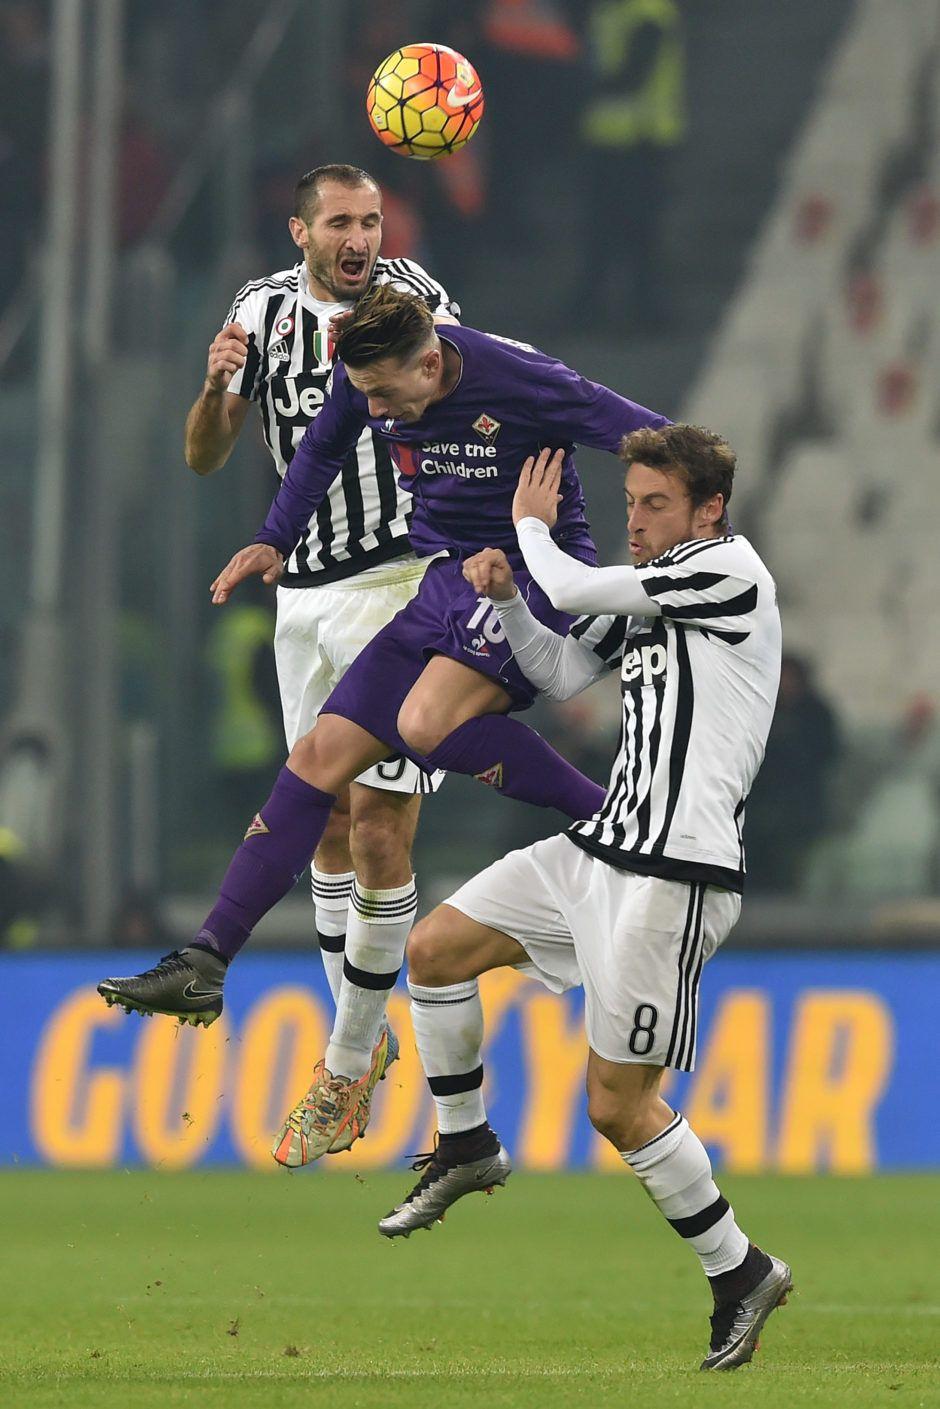 Marchisio: 'Bernardeschi a genuine talent' -Juvefc.com